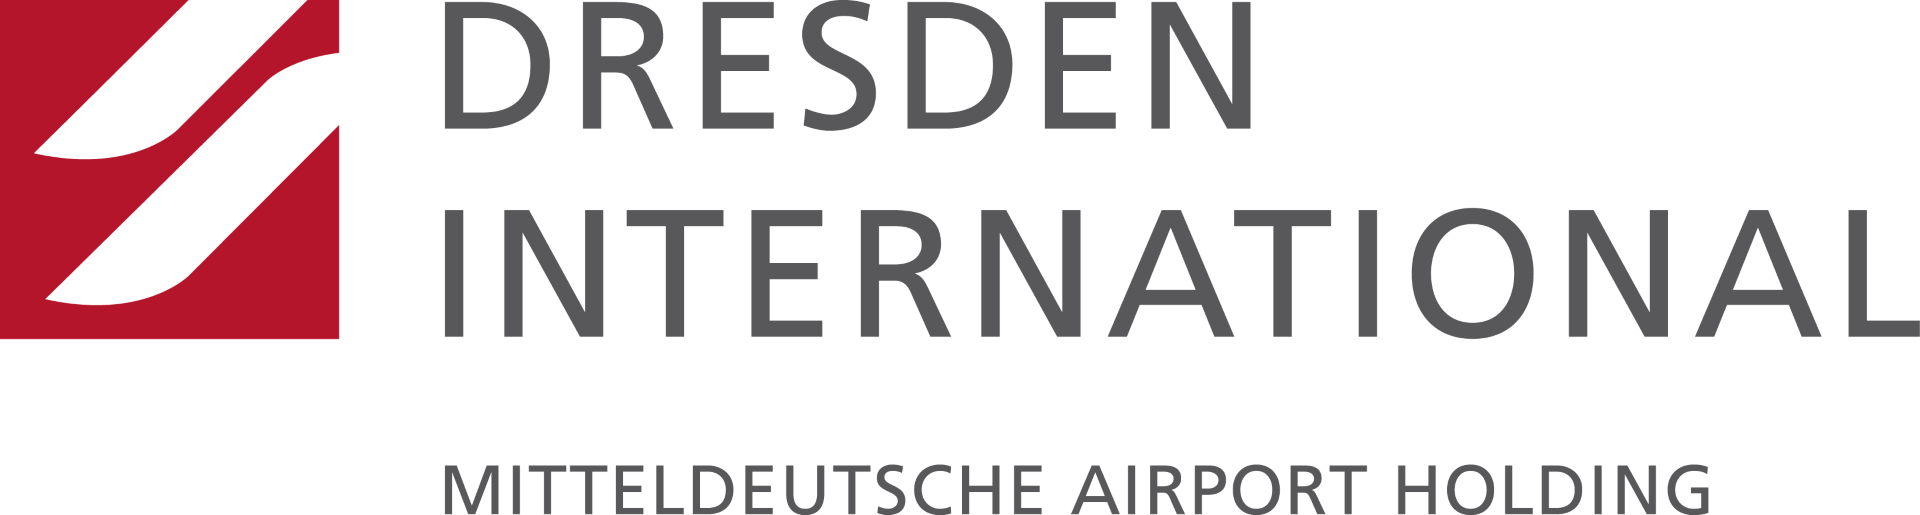 Flughafen Dresden GmbH